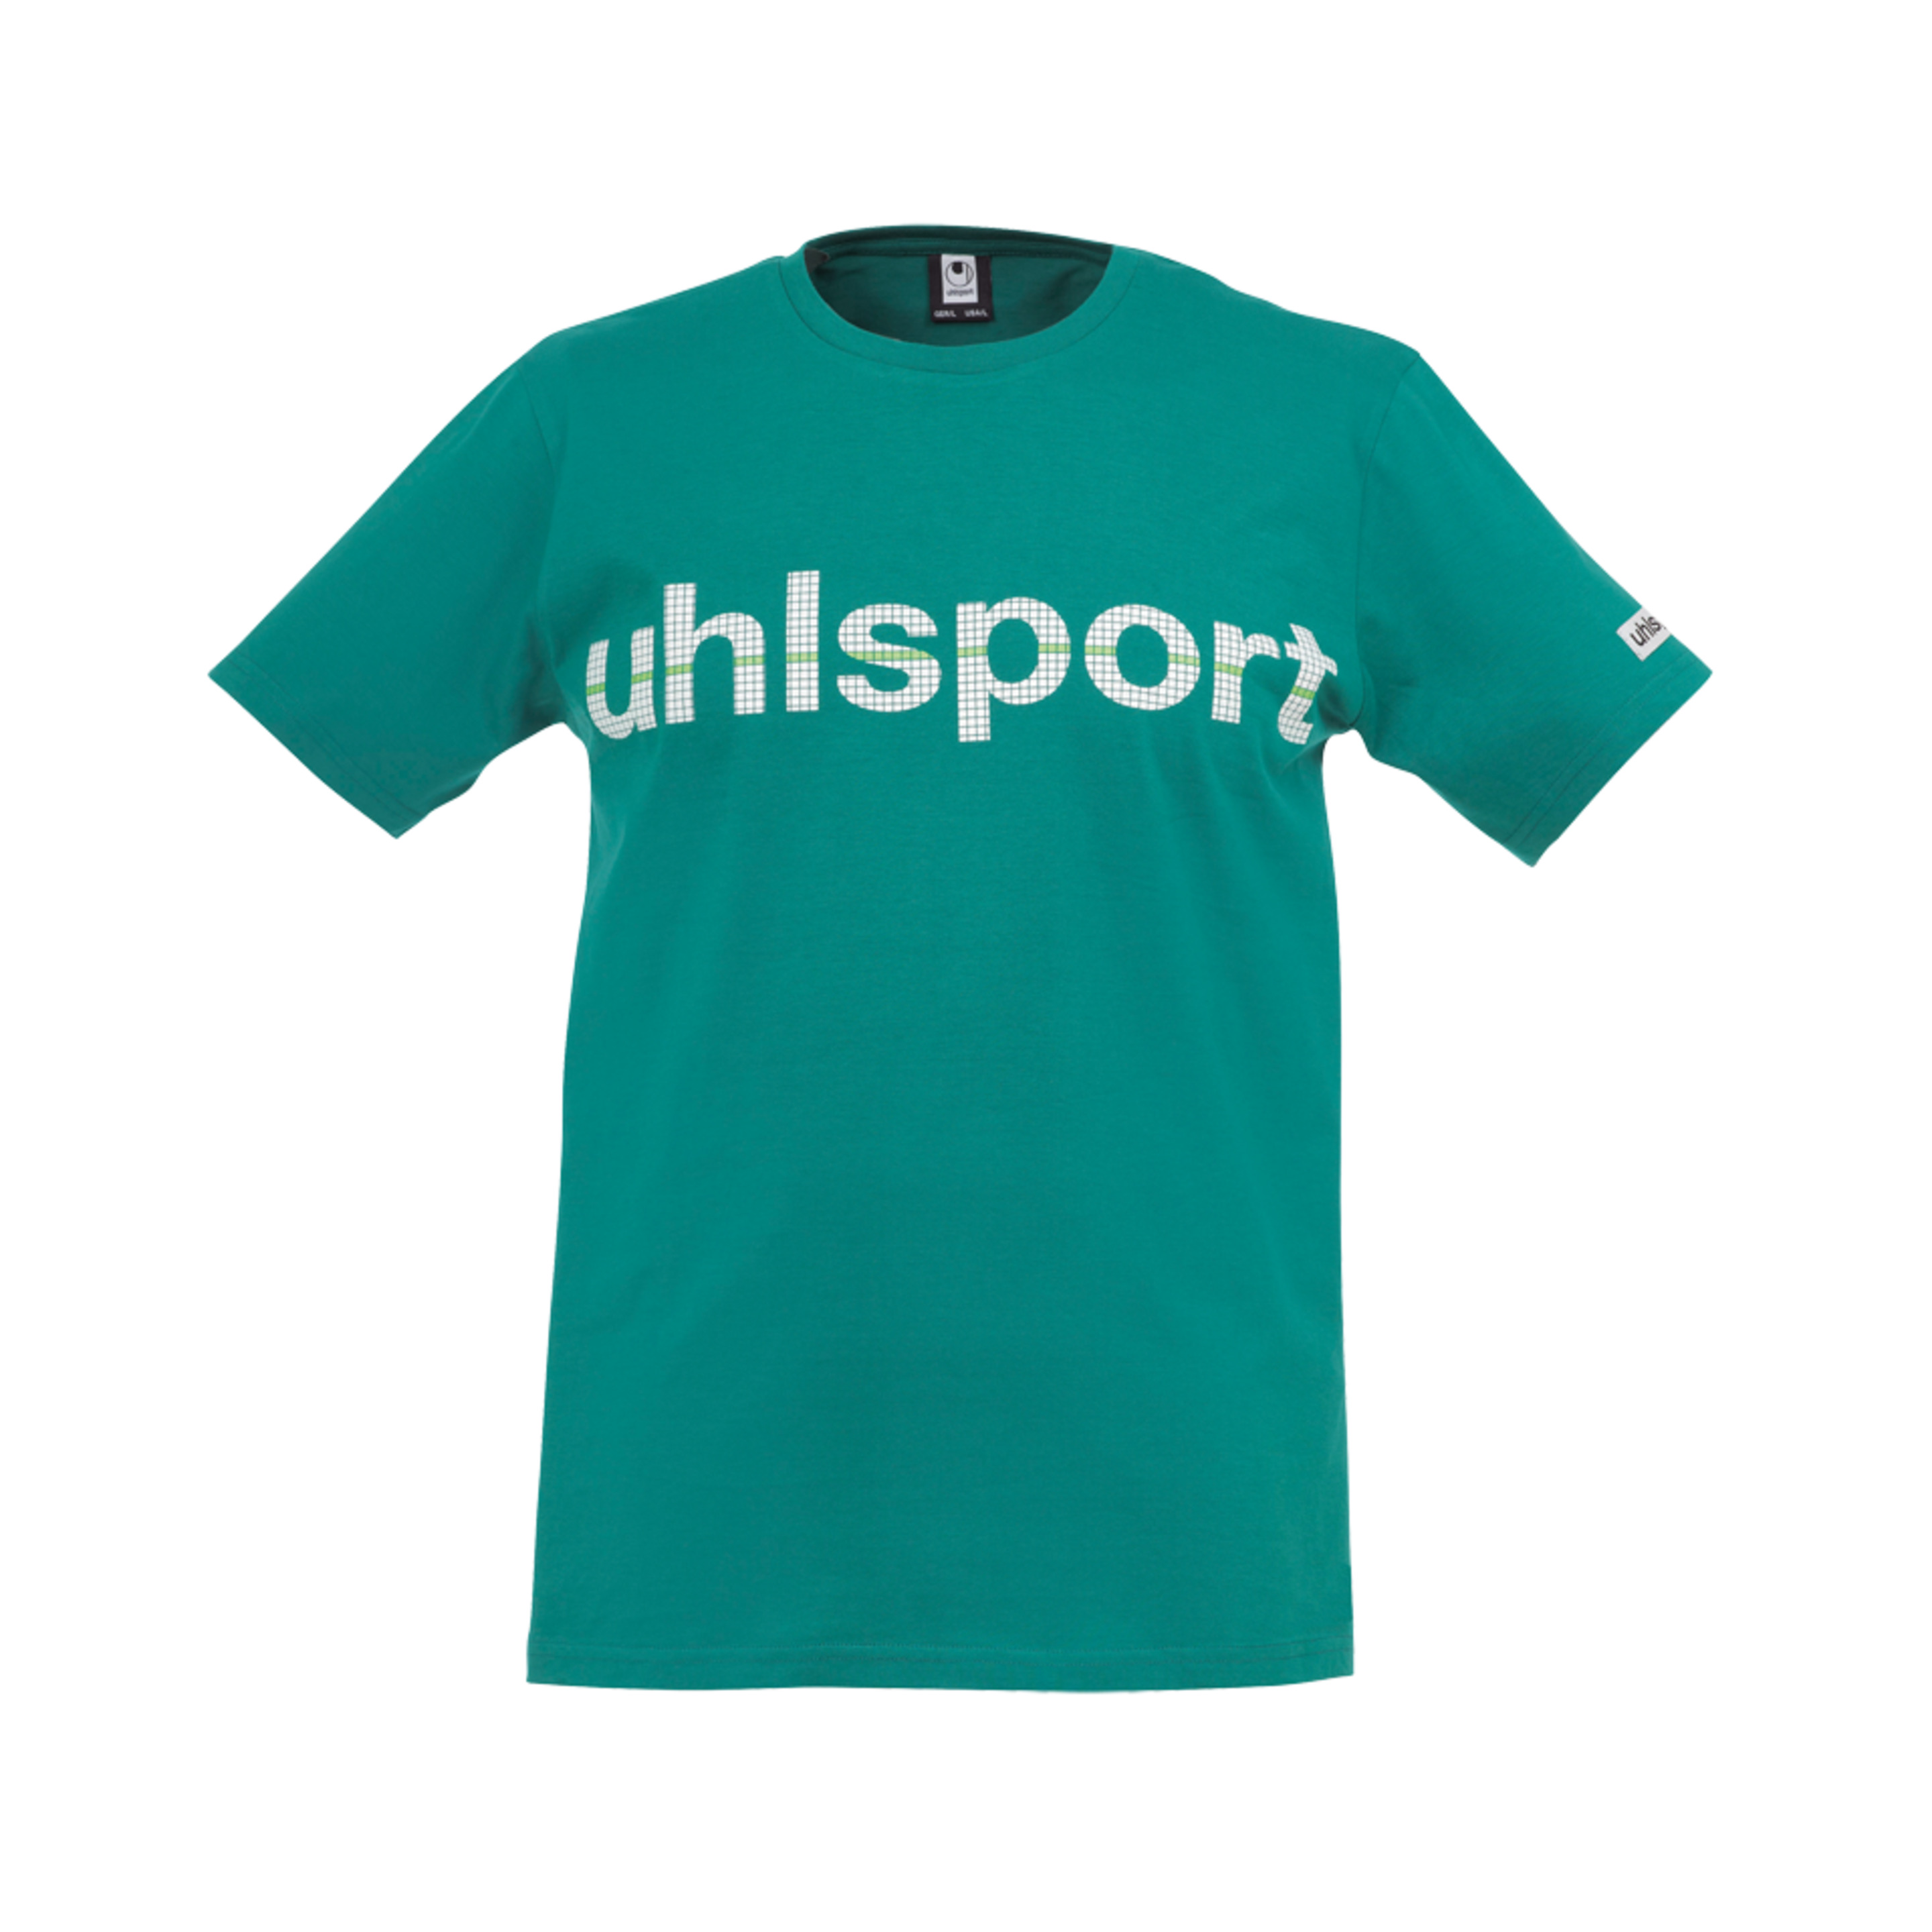 Essential Promo Camiseta Lagoon Uhlsport - verde - 